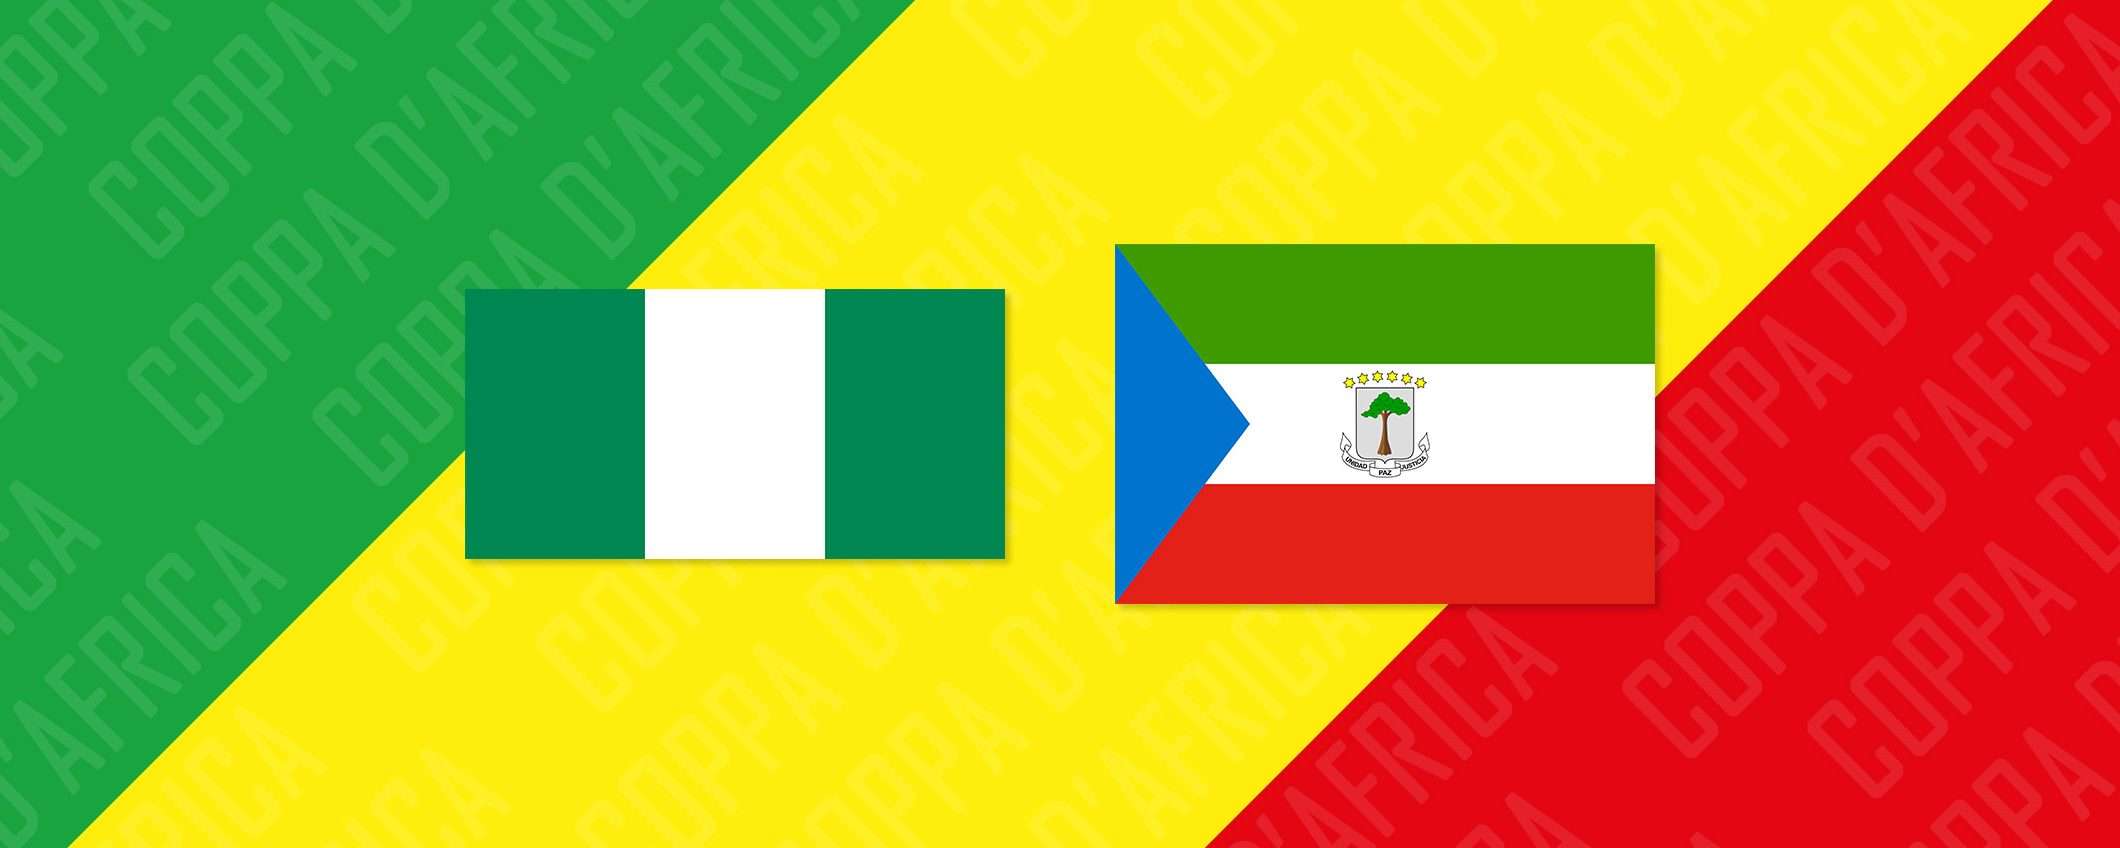 Nigeria-Guinea Equatoriale: come vederla in streaming dall'estero